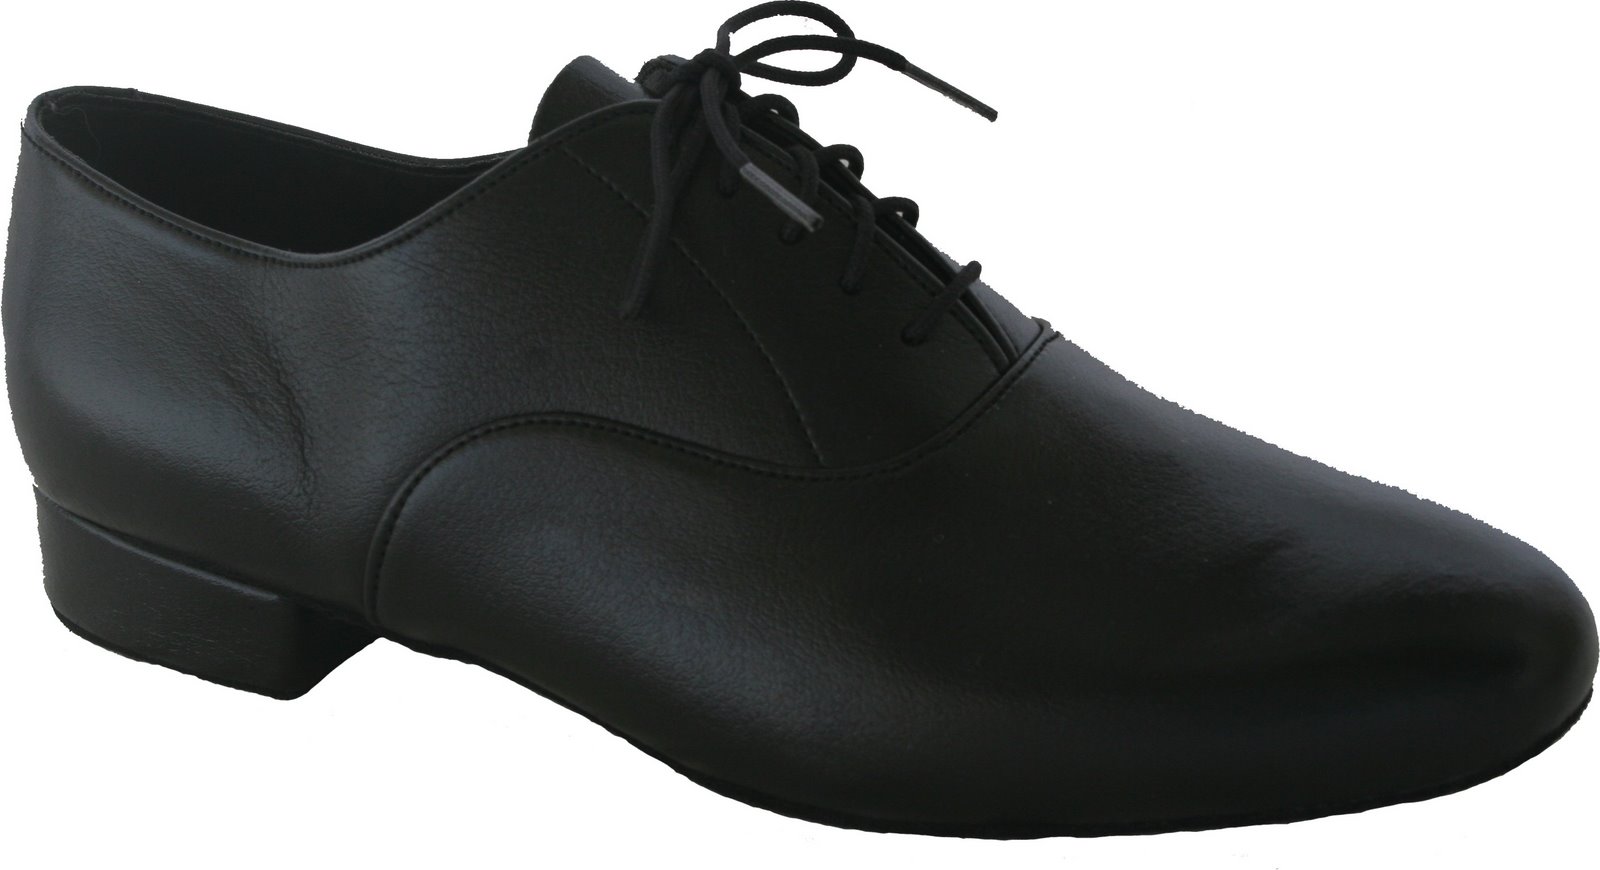 mens black dance shoes